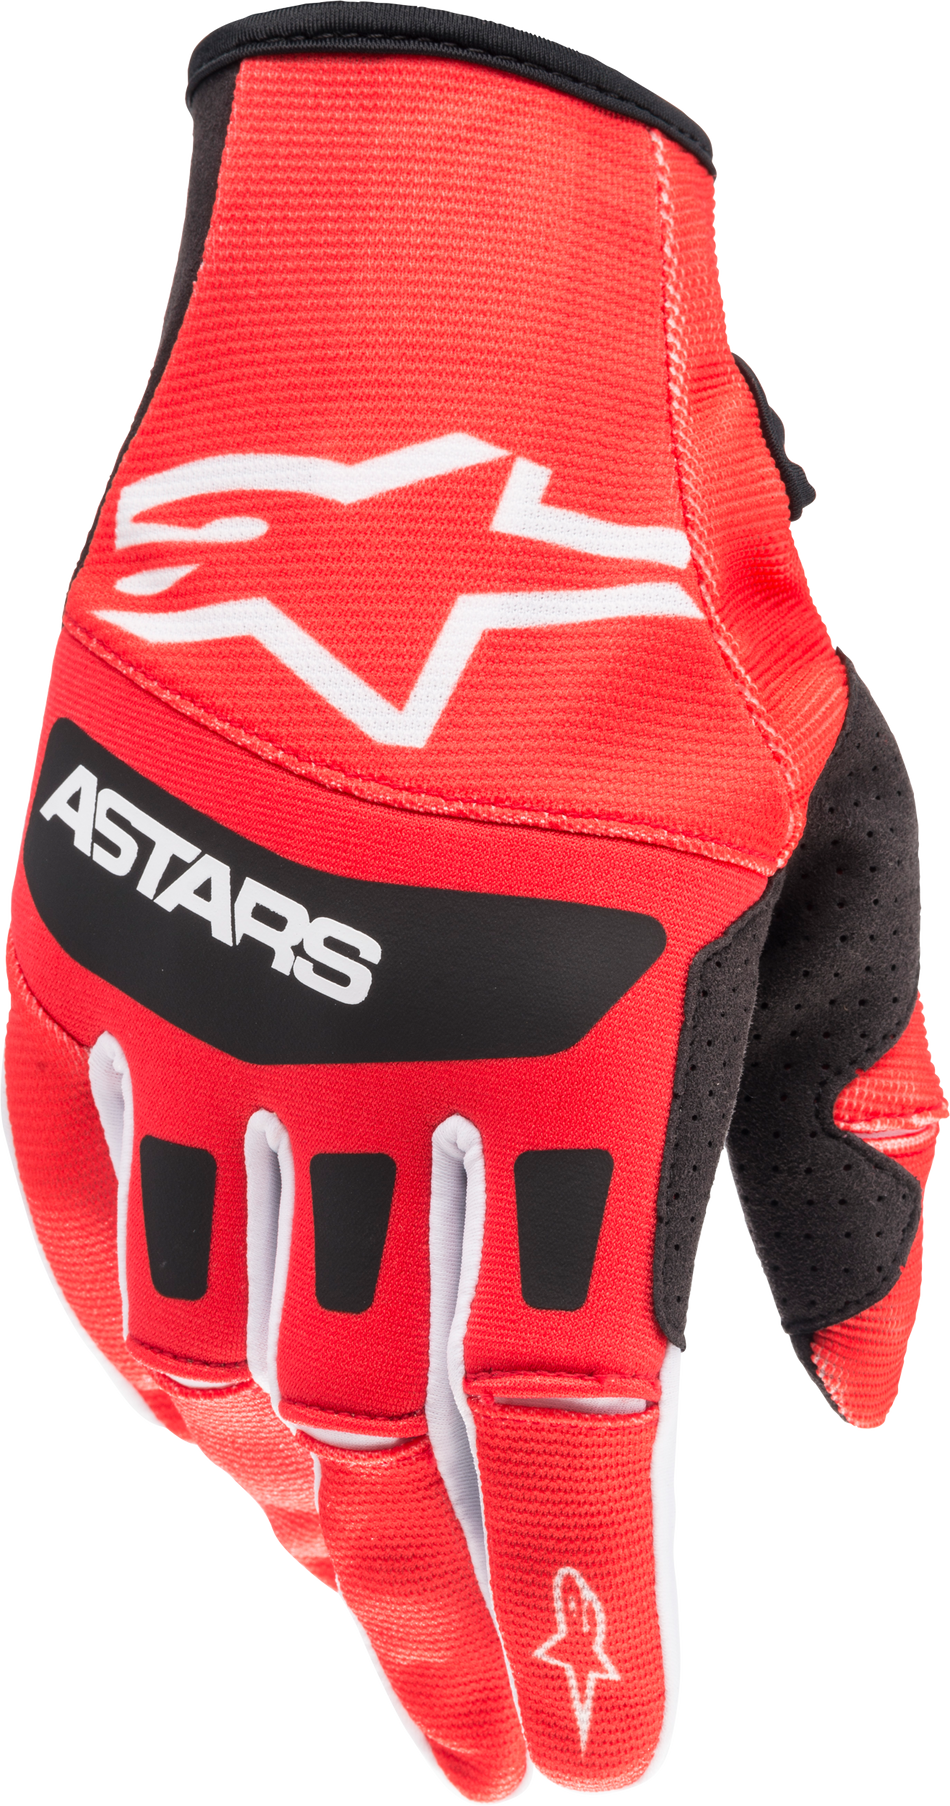 ALPINESTARS Techstar Gloves Bright Red/Black Lg 3561022-3031-L